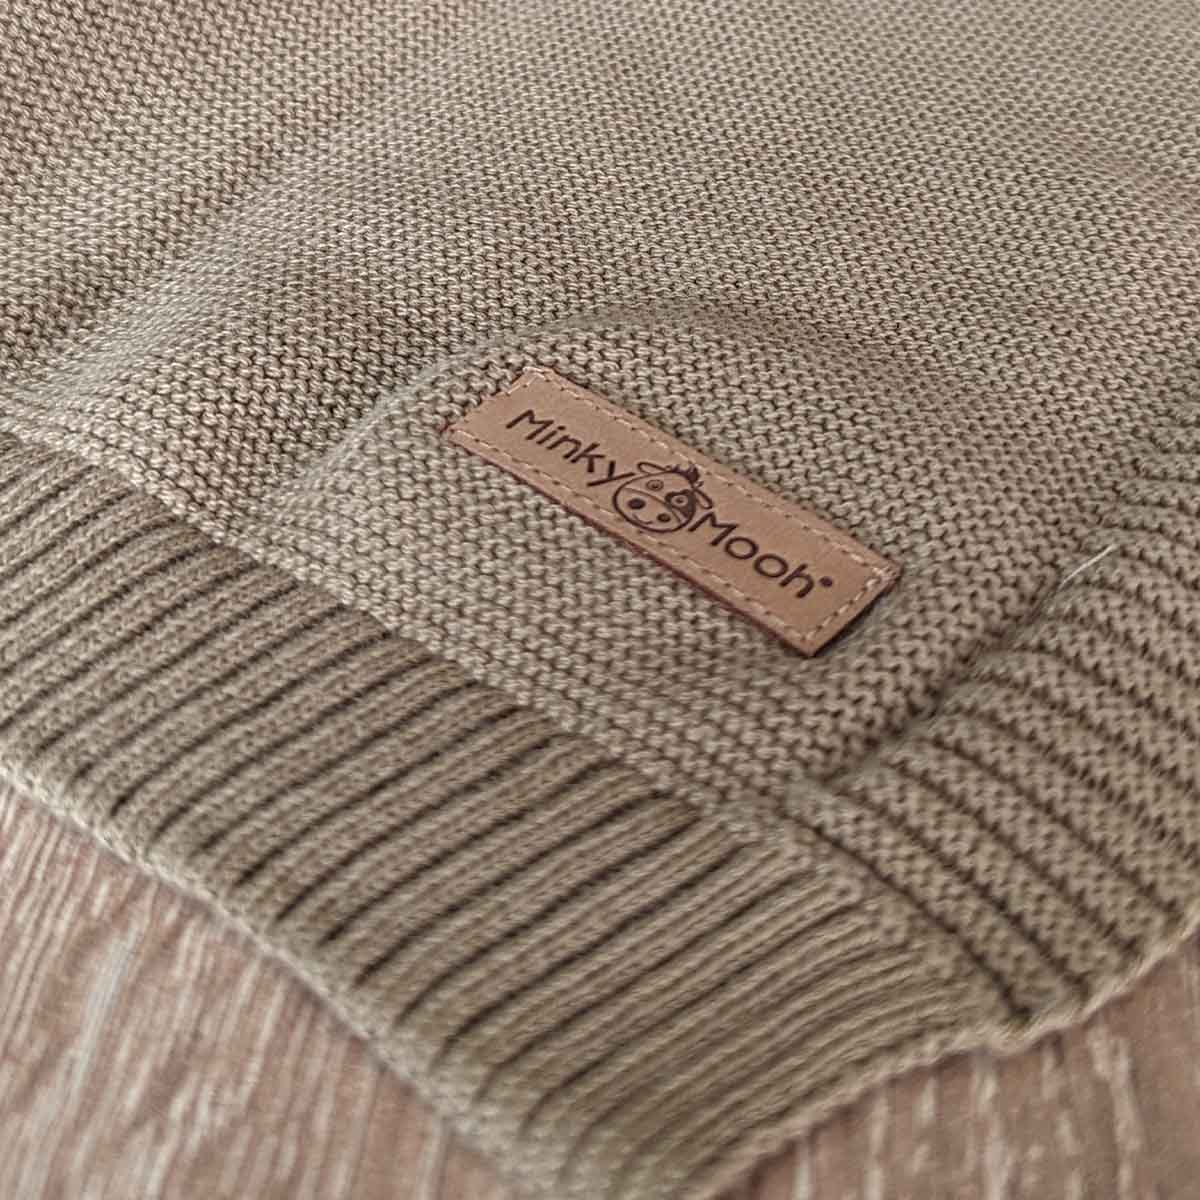 Nahaufnahme der Strick-Textur einer taupe farbenen Bio-Baumwolldecke mit Logo-Etikett 'Minky Mooh'